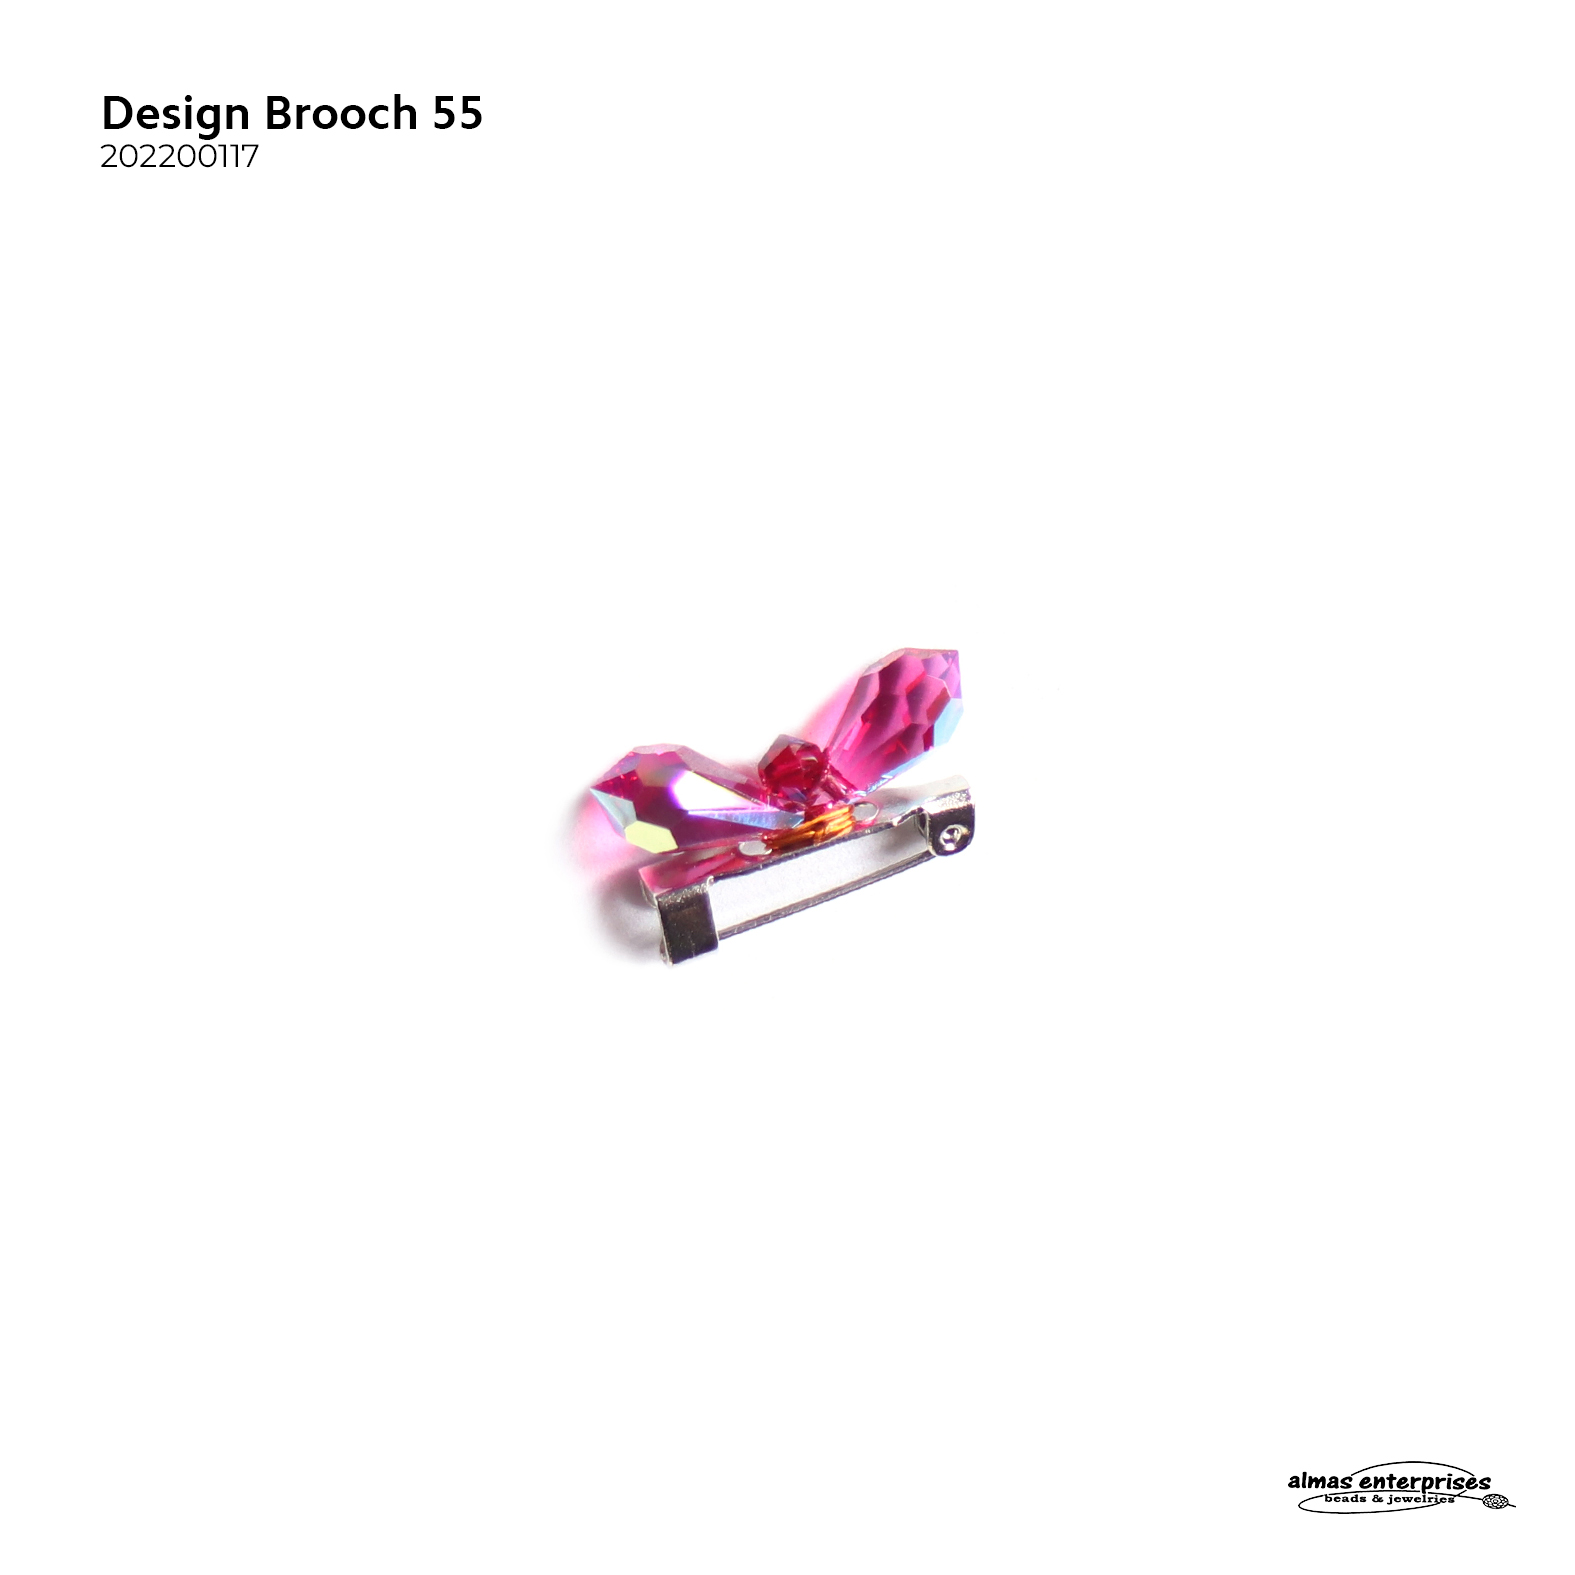 Design Brooch 55